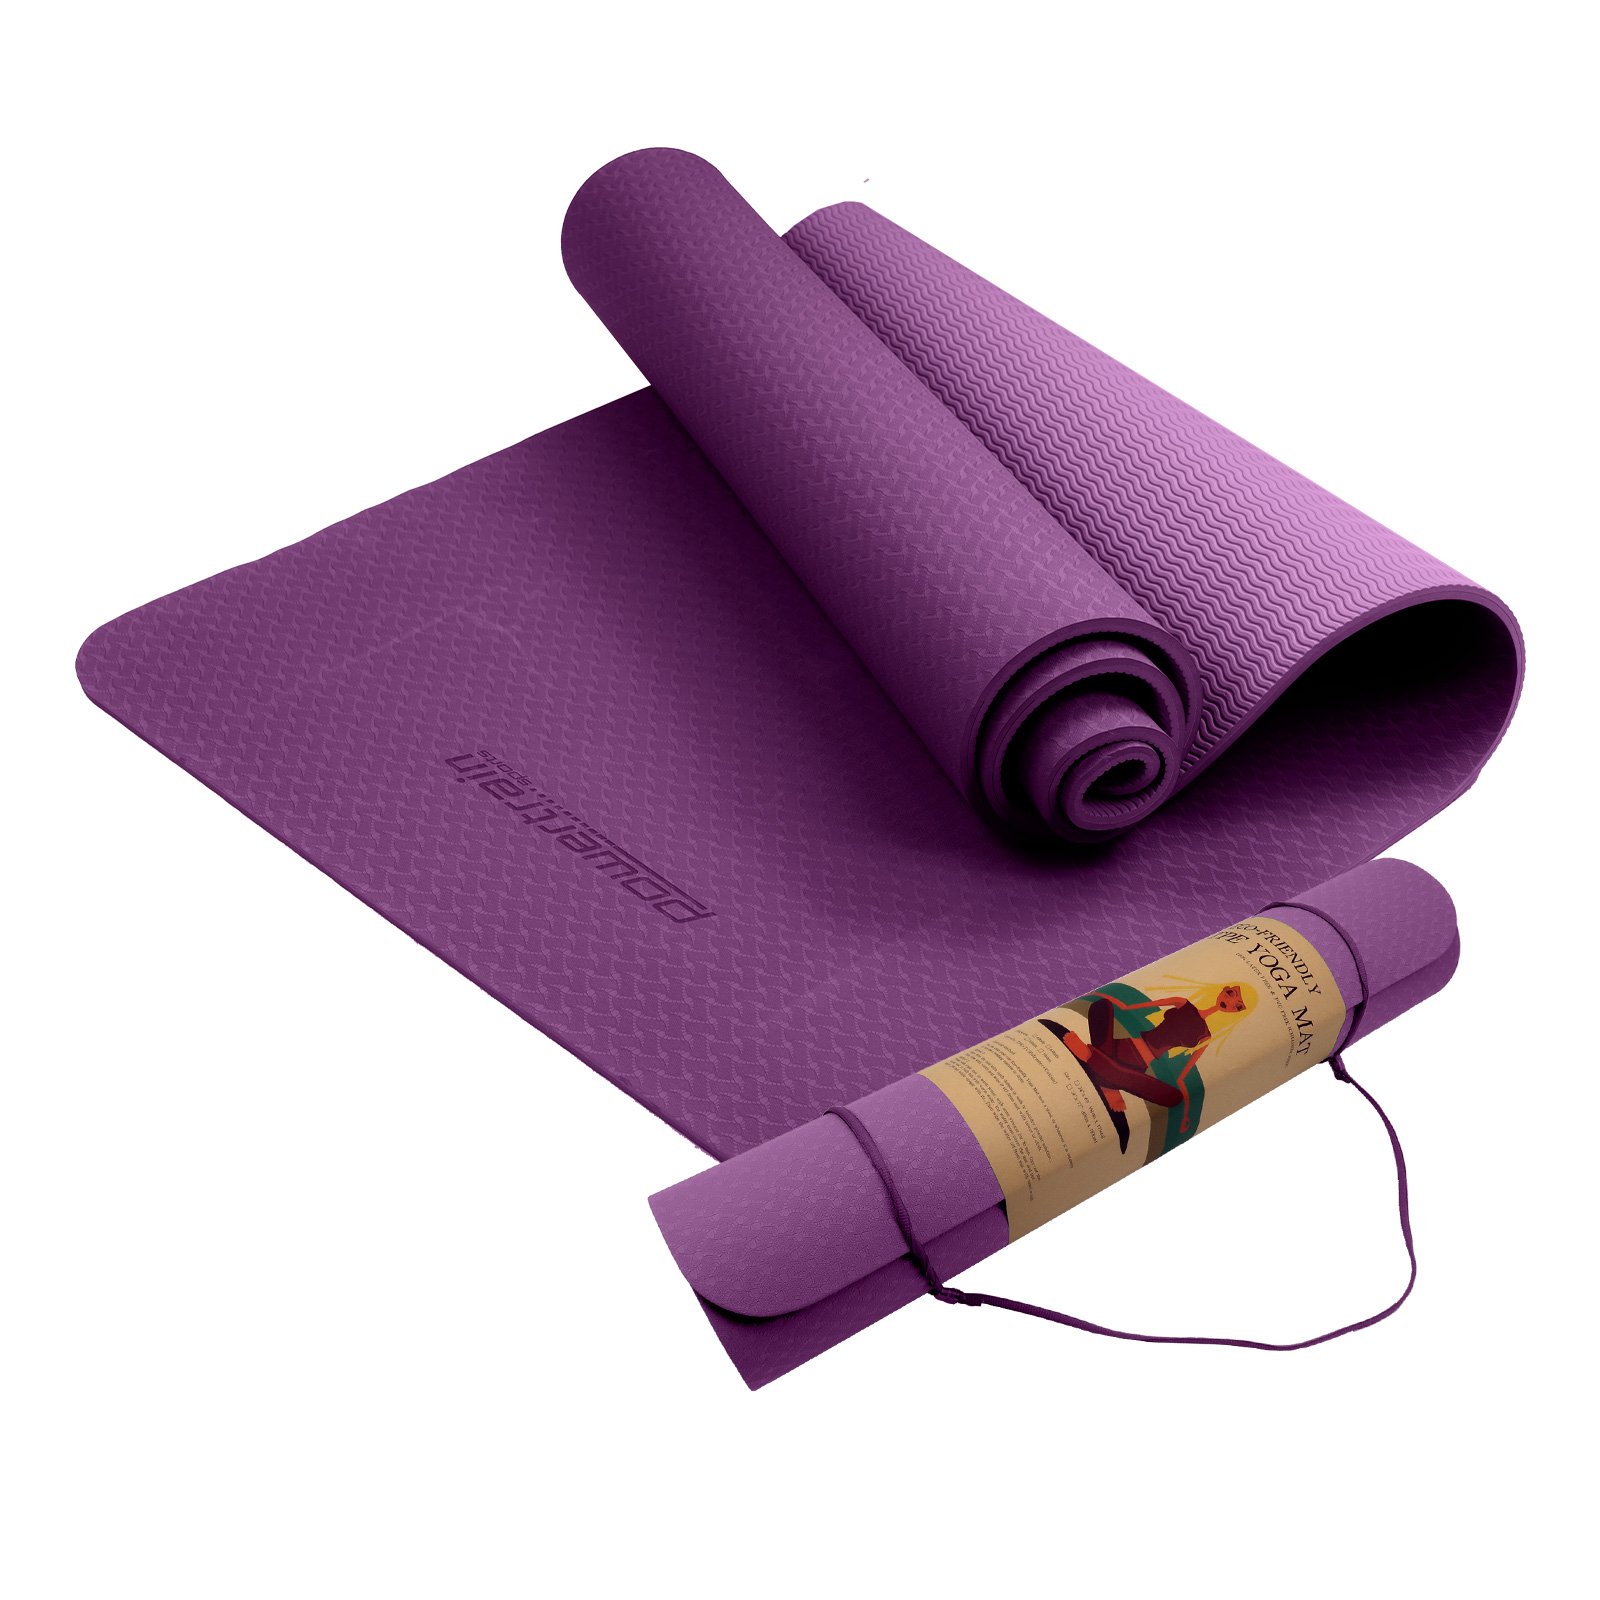 Powertrain Eco-Friendly TPE Yoga Pilates Exercise Mat 6mm - Purple 2